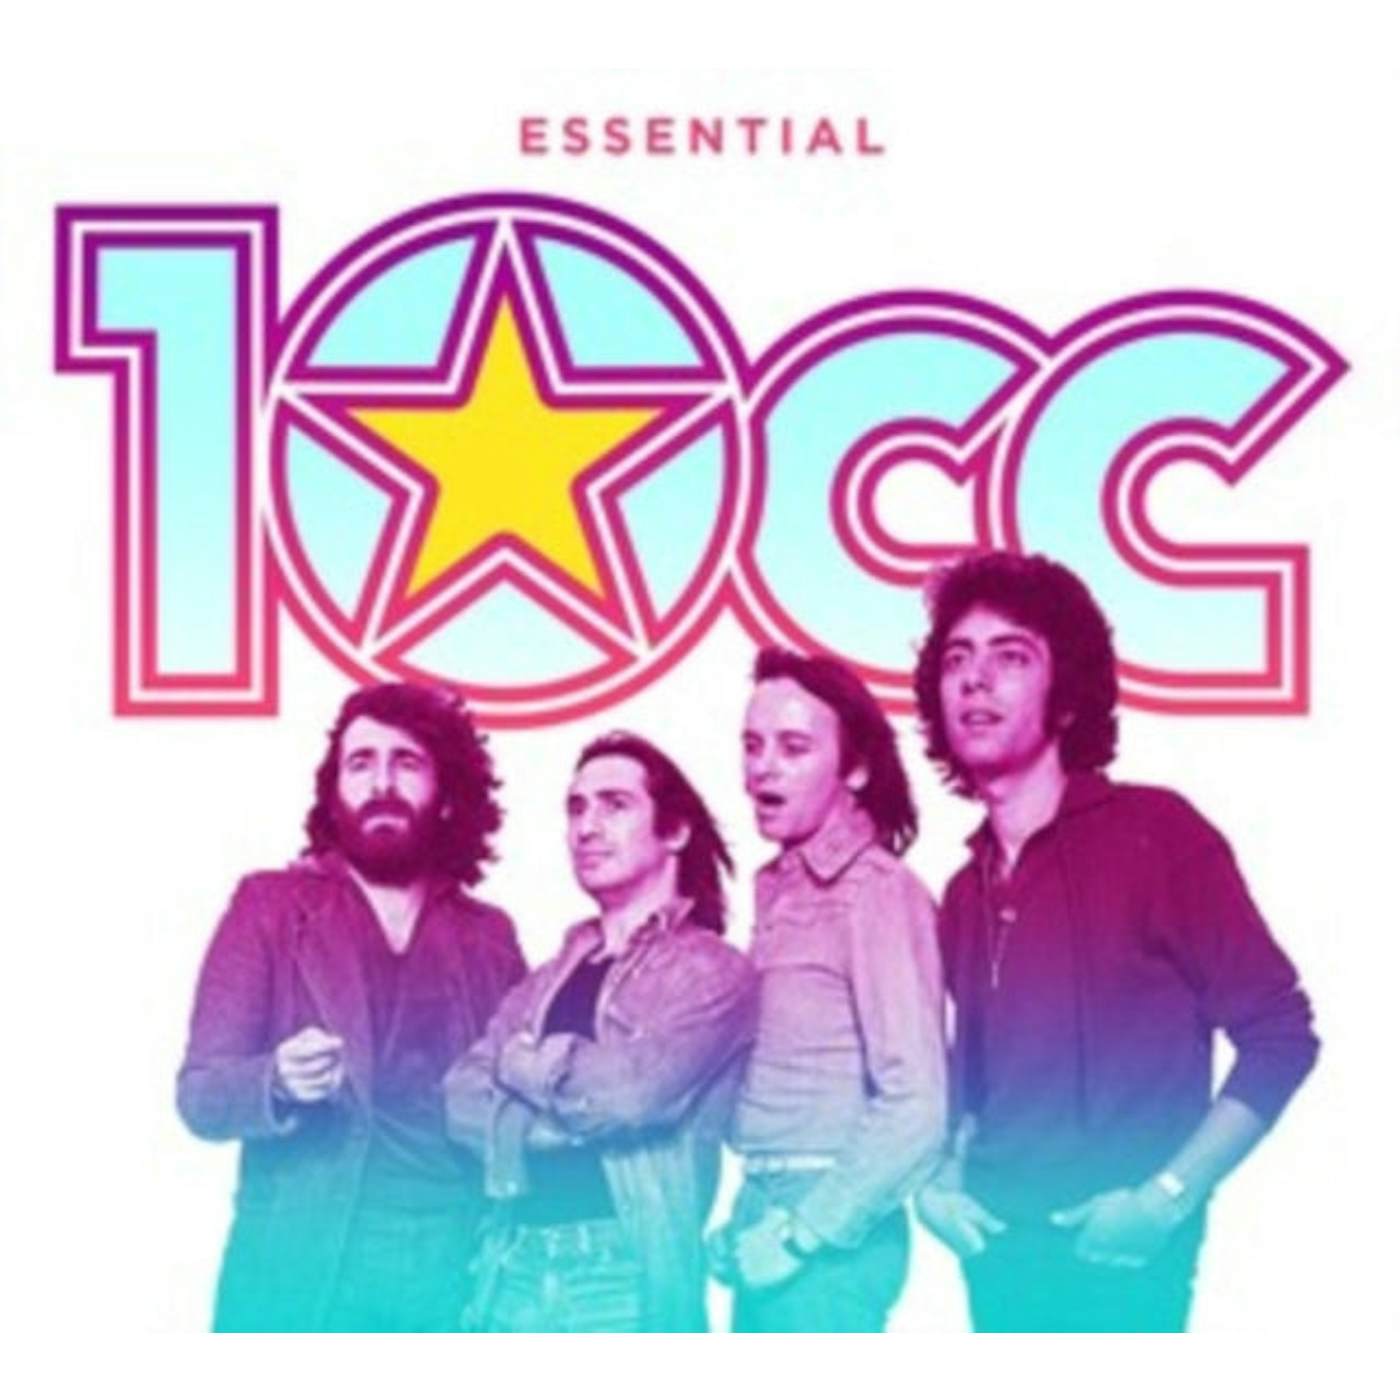 10cc CD - Essential 10 cc